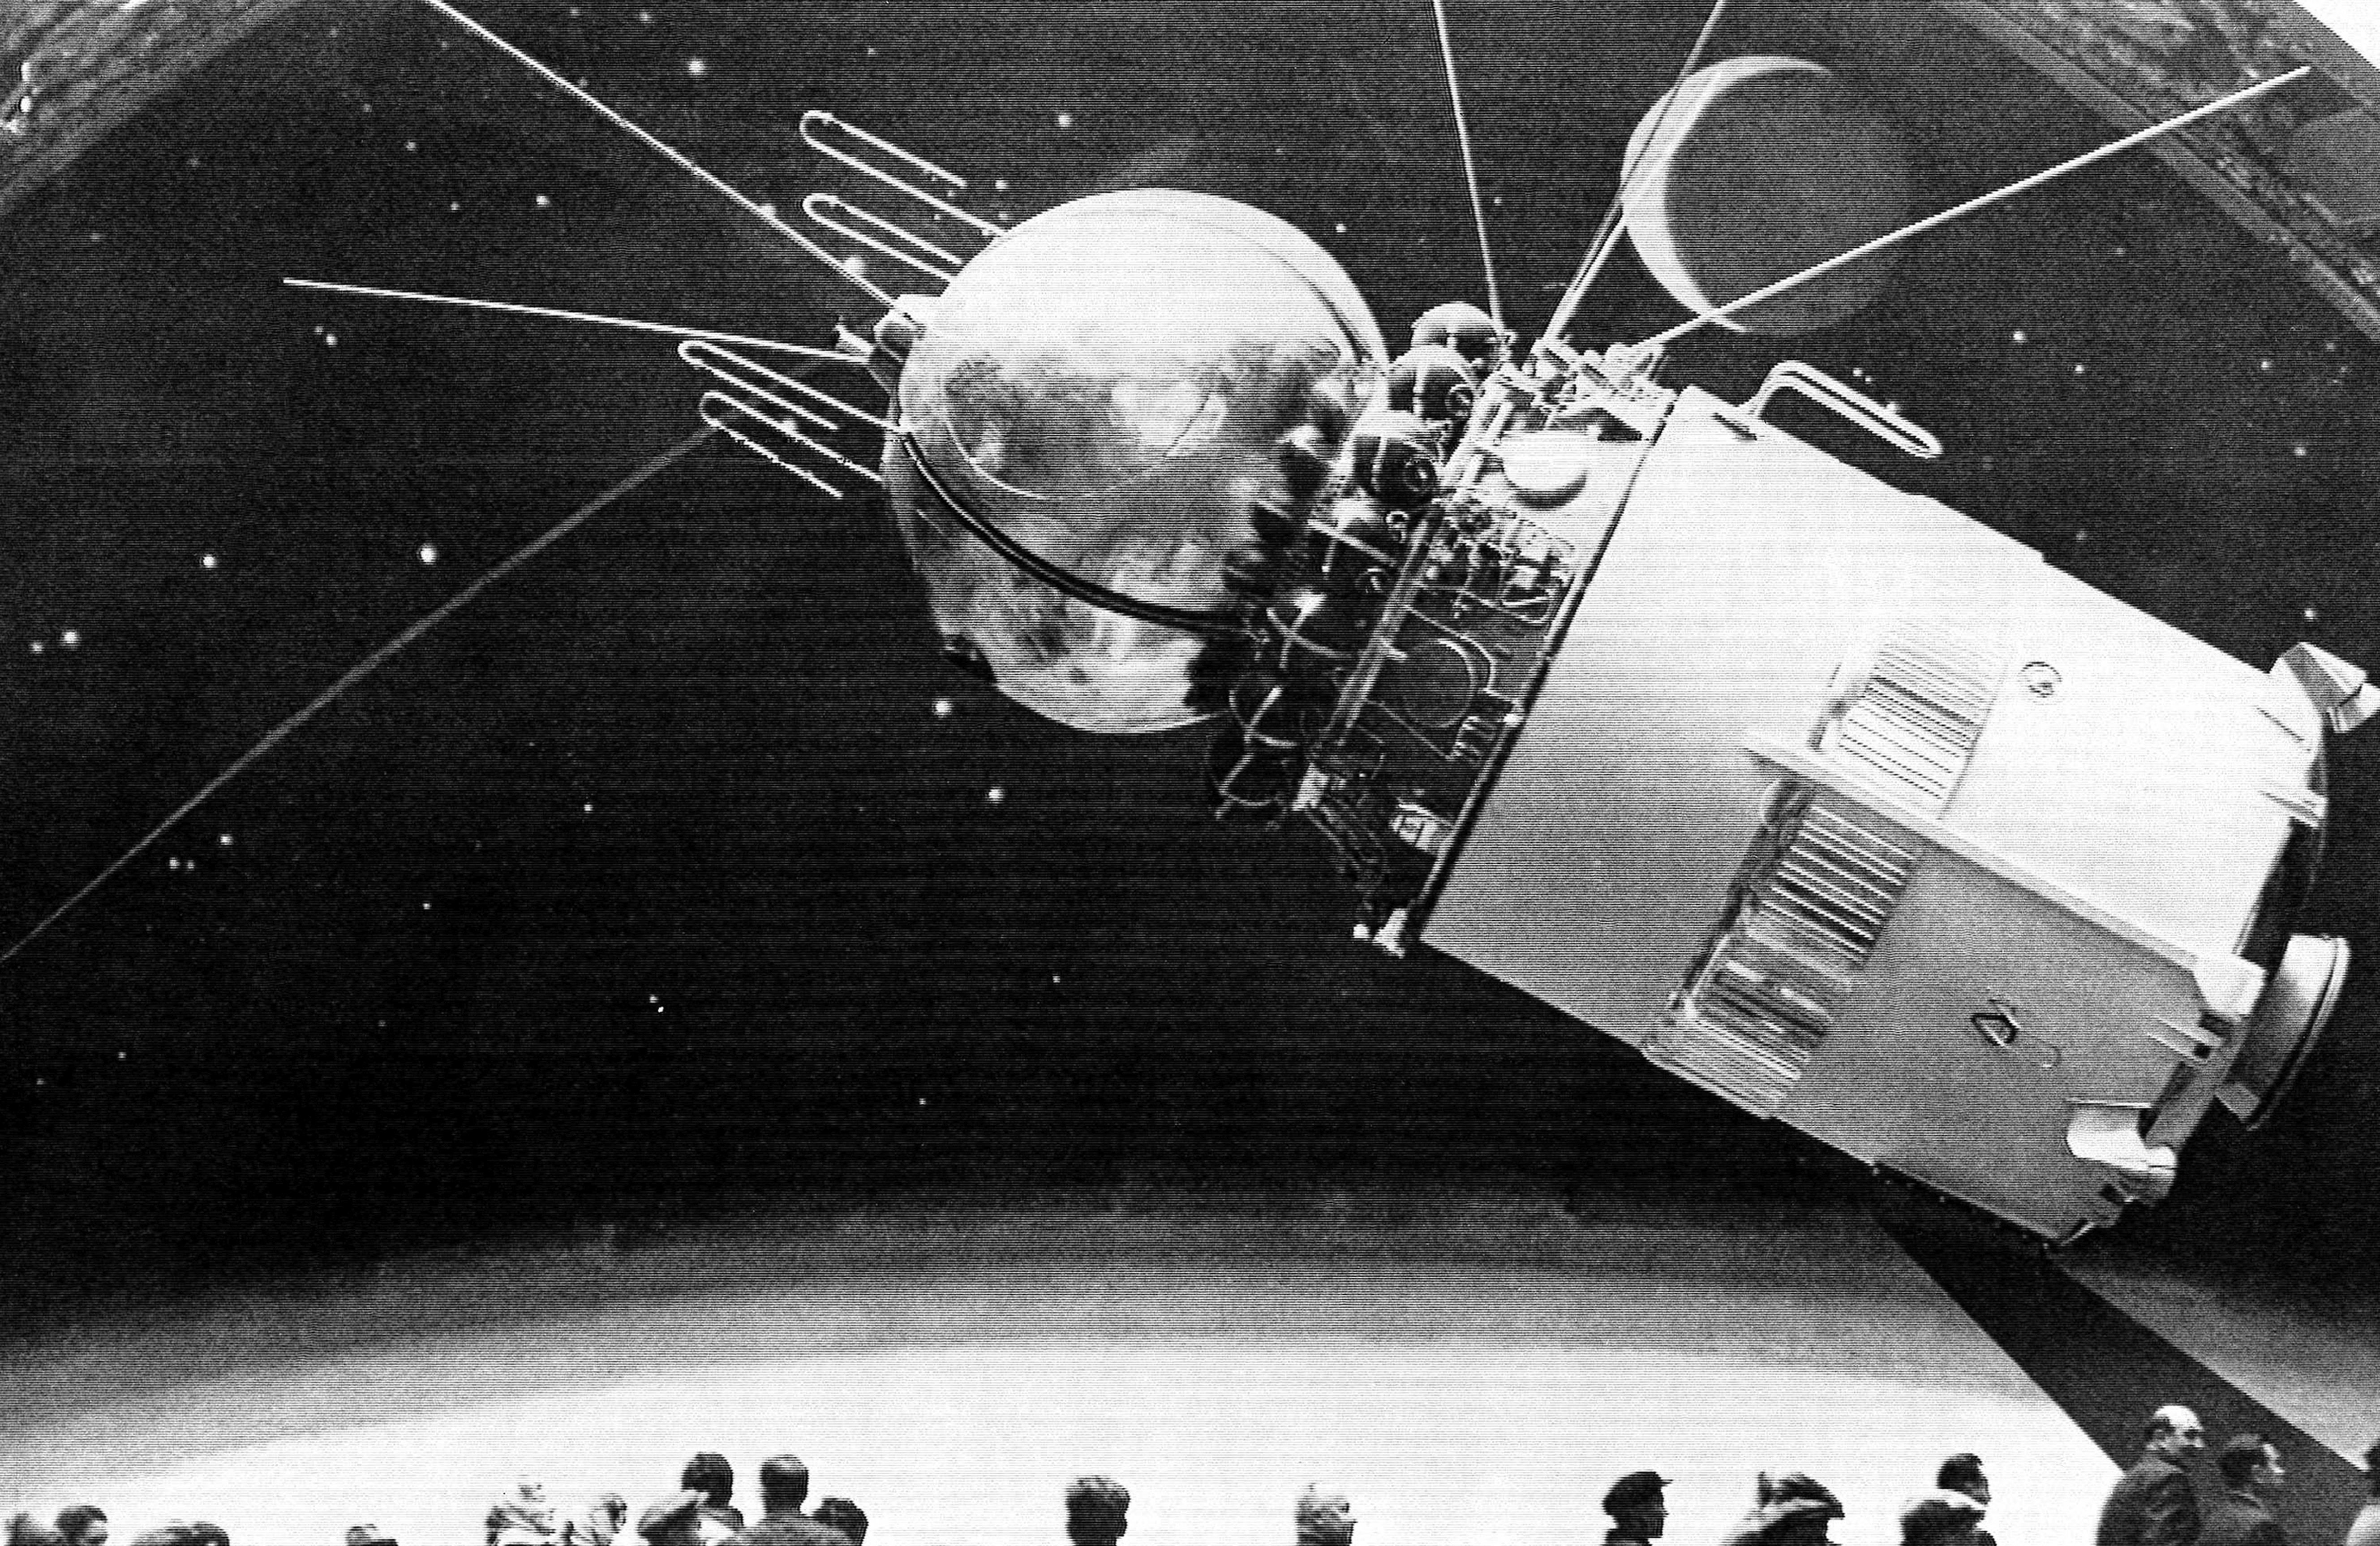 ARCHIVO - La nave espacial tipo Vostok, como Yuri Gagarin y otros cosmonautas orbitaron la Tierra, se exhibe públicamente en Moscú, el 29 de abril de 1968 por primera vez. Los cosmonautas viajan en el Domo a la izquierda delante de la sección de instrumentos. La última etapa del cohete de lanzamiento es el cilindro en la parte trasera que se separa después del disparo. 

